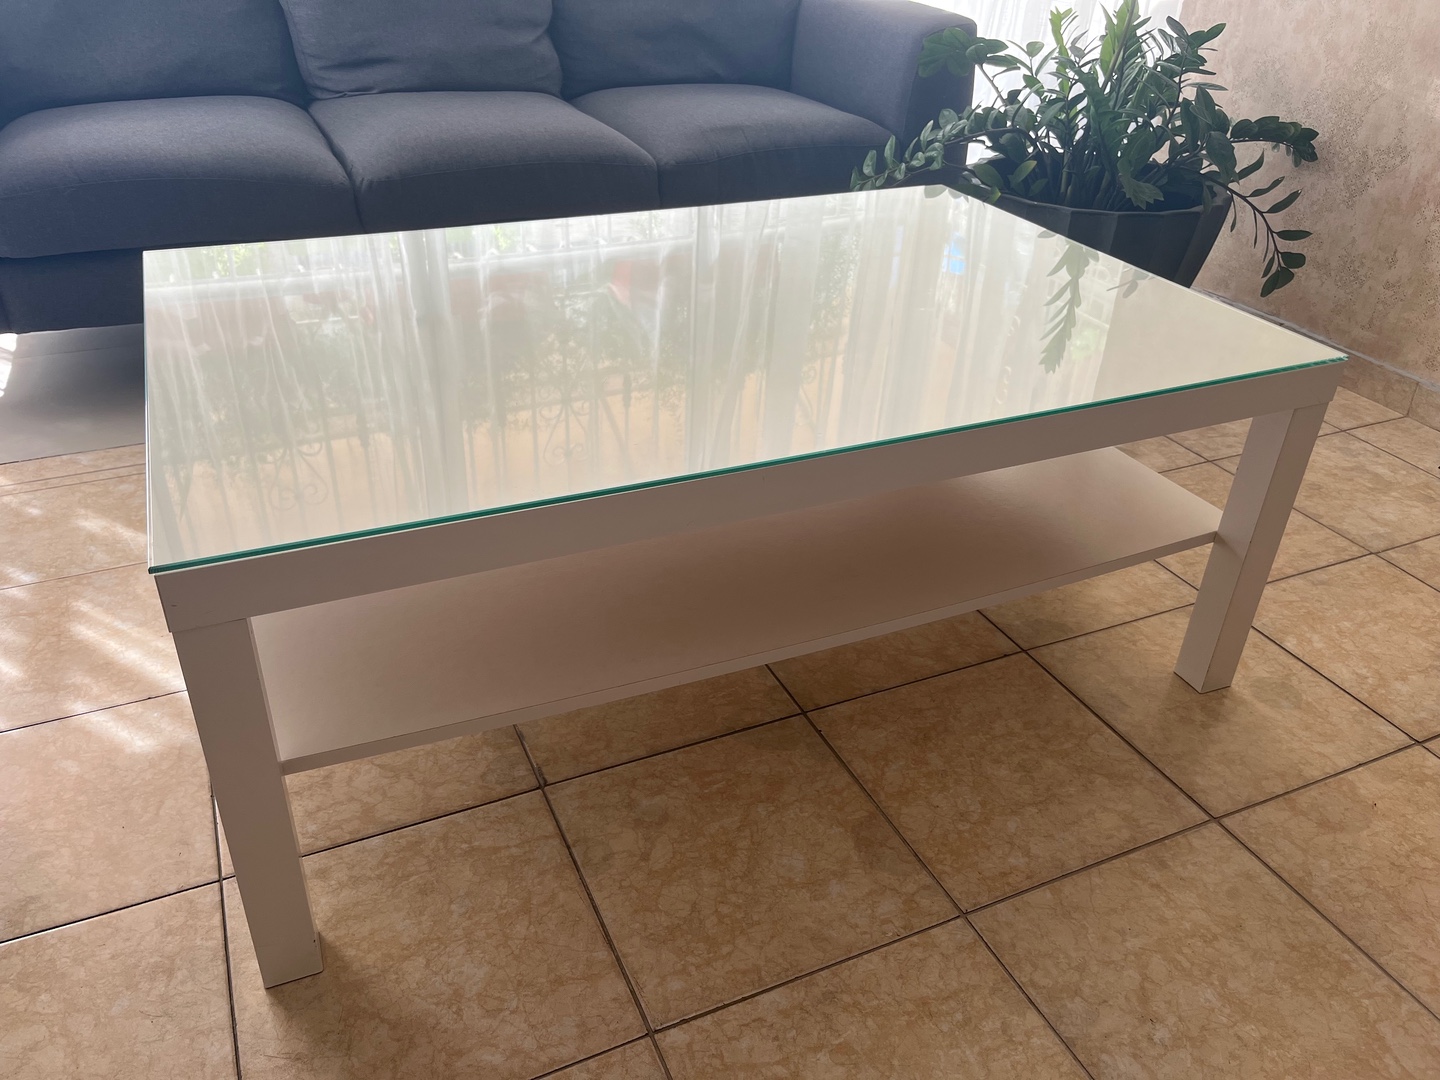 muebles y colchones - Vendo mesa centro de sala con tope cristal 4